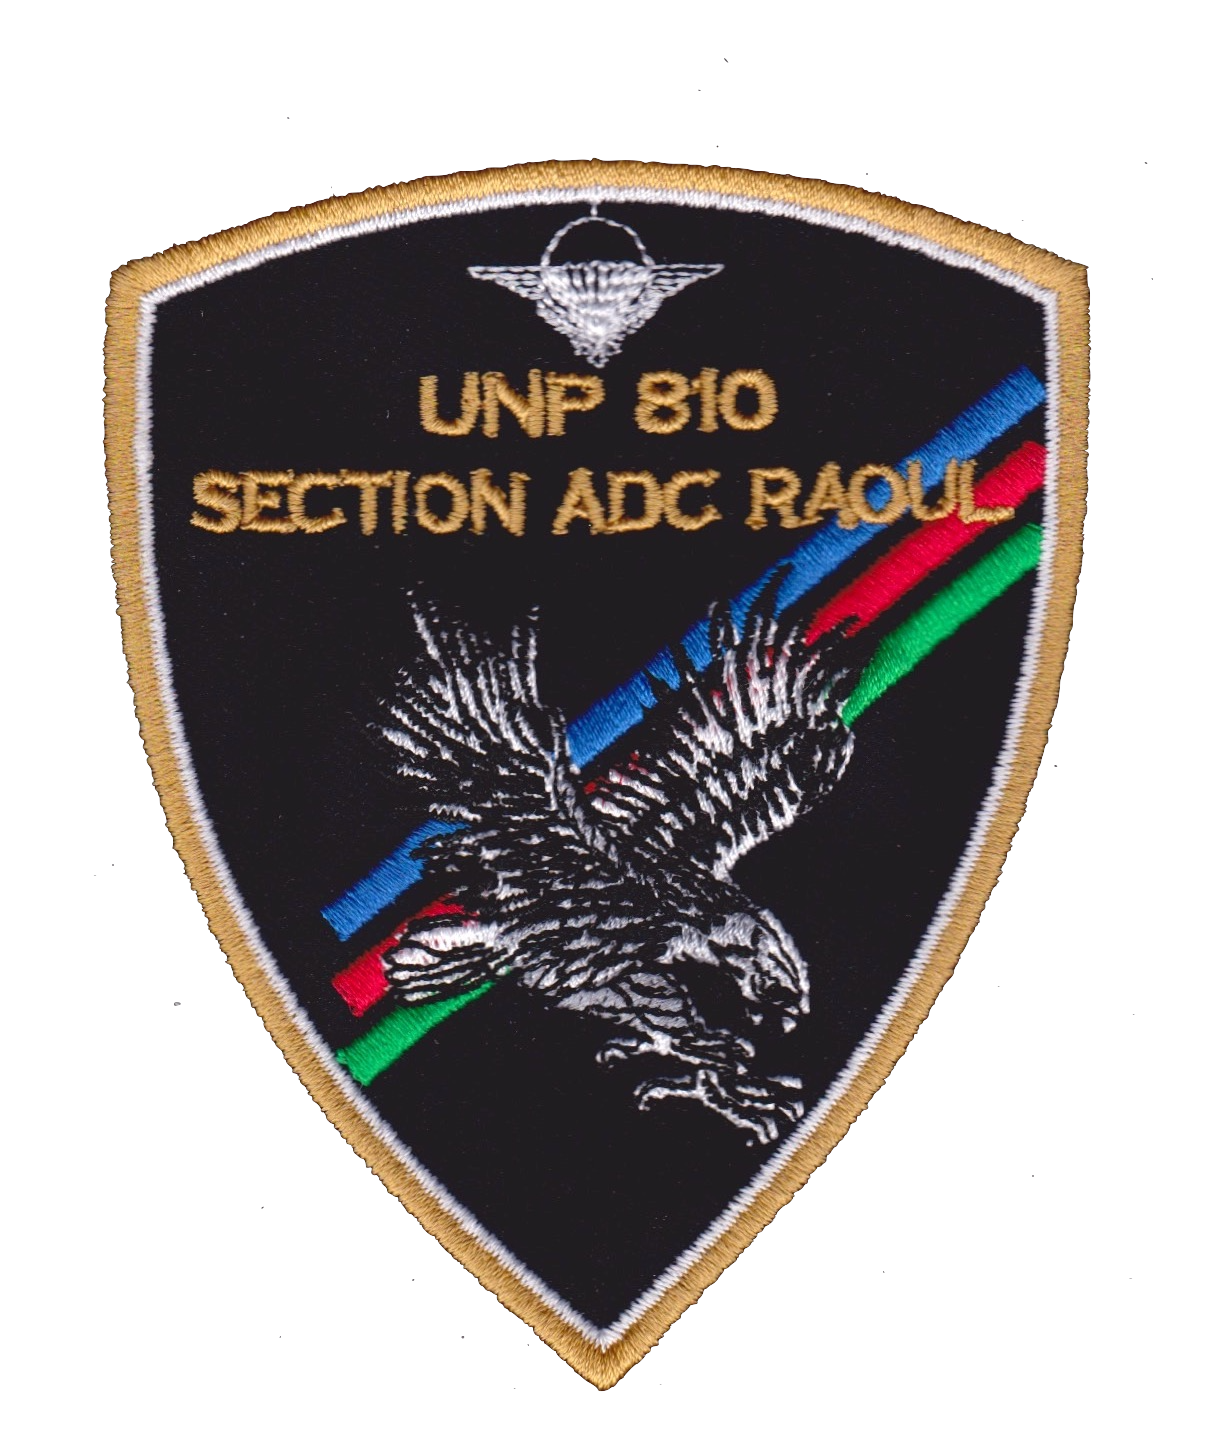 Patch U.N.P. section "Adc RAOUL" brodé sur velcro (mâle/femelle) 10€ l'unité